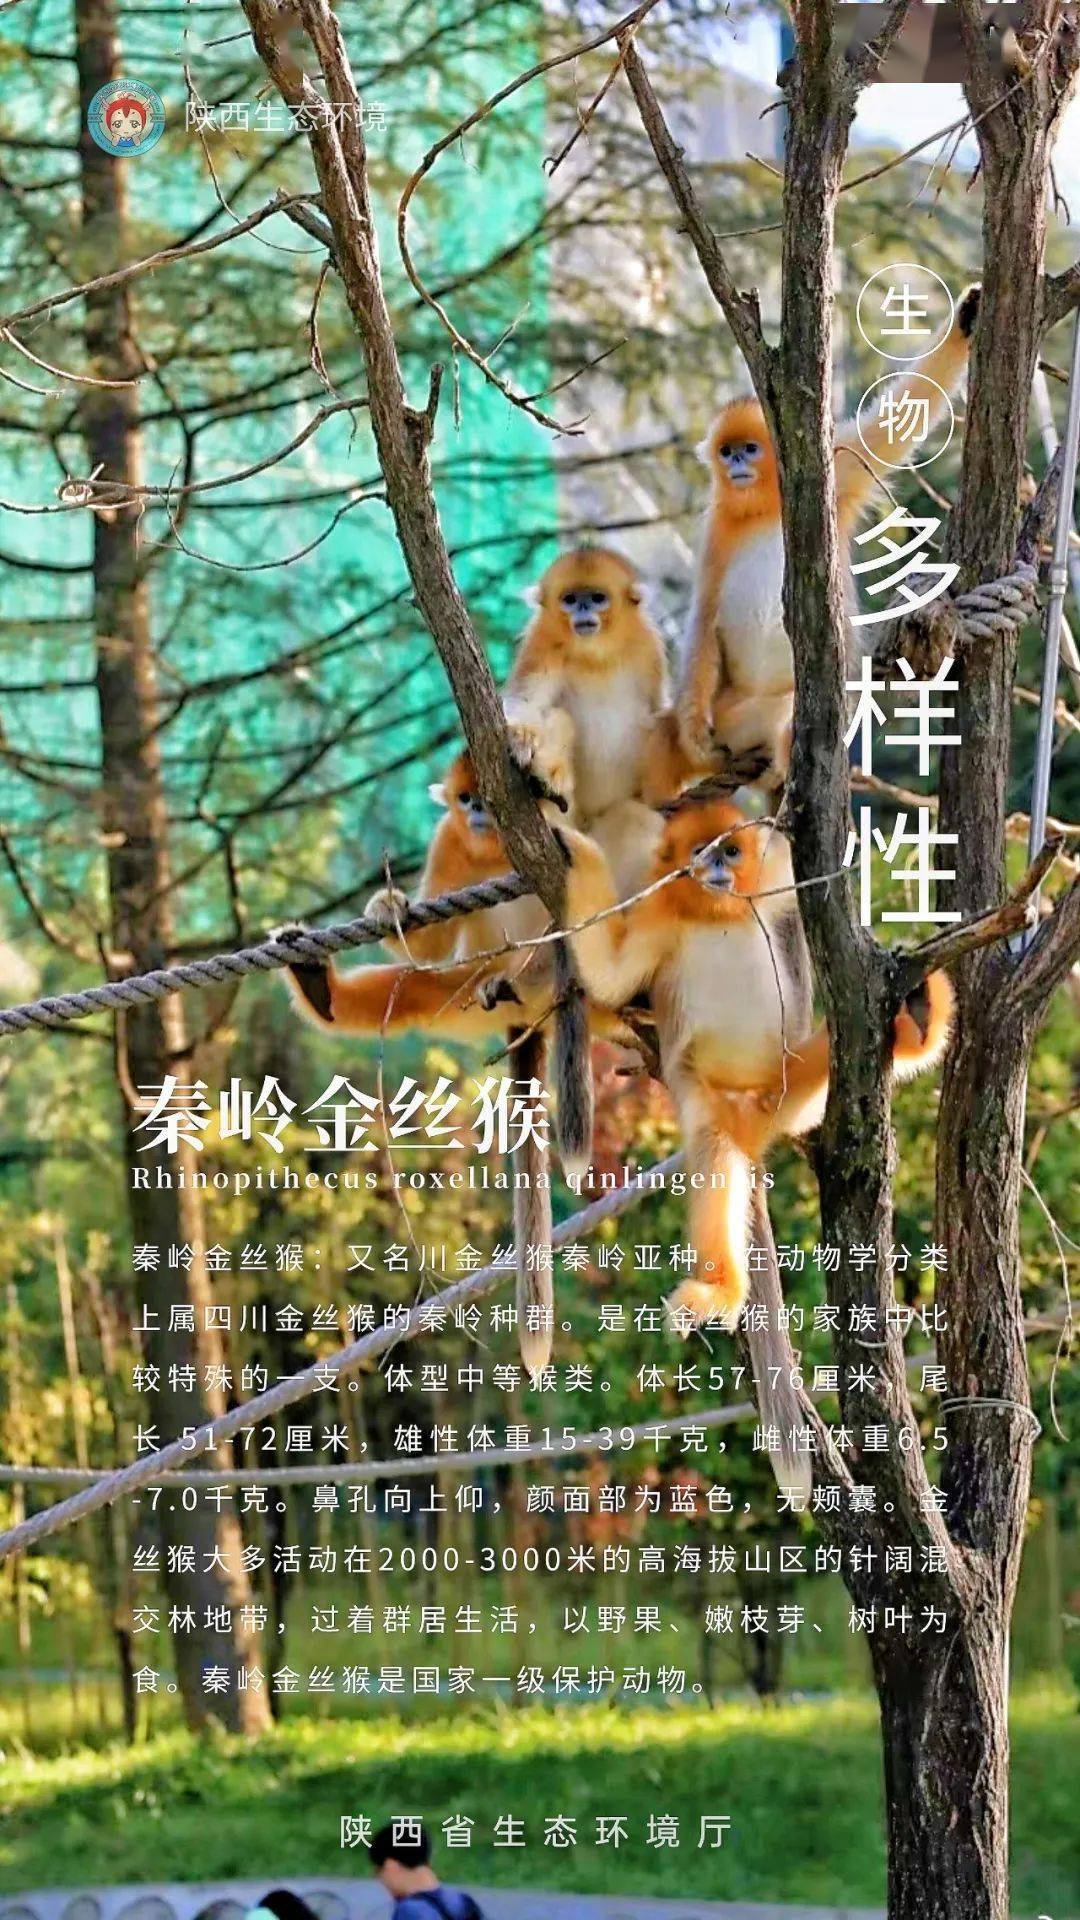 保护生物多样性系列海报三丨人与自然和谐共生携手共建美好家园